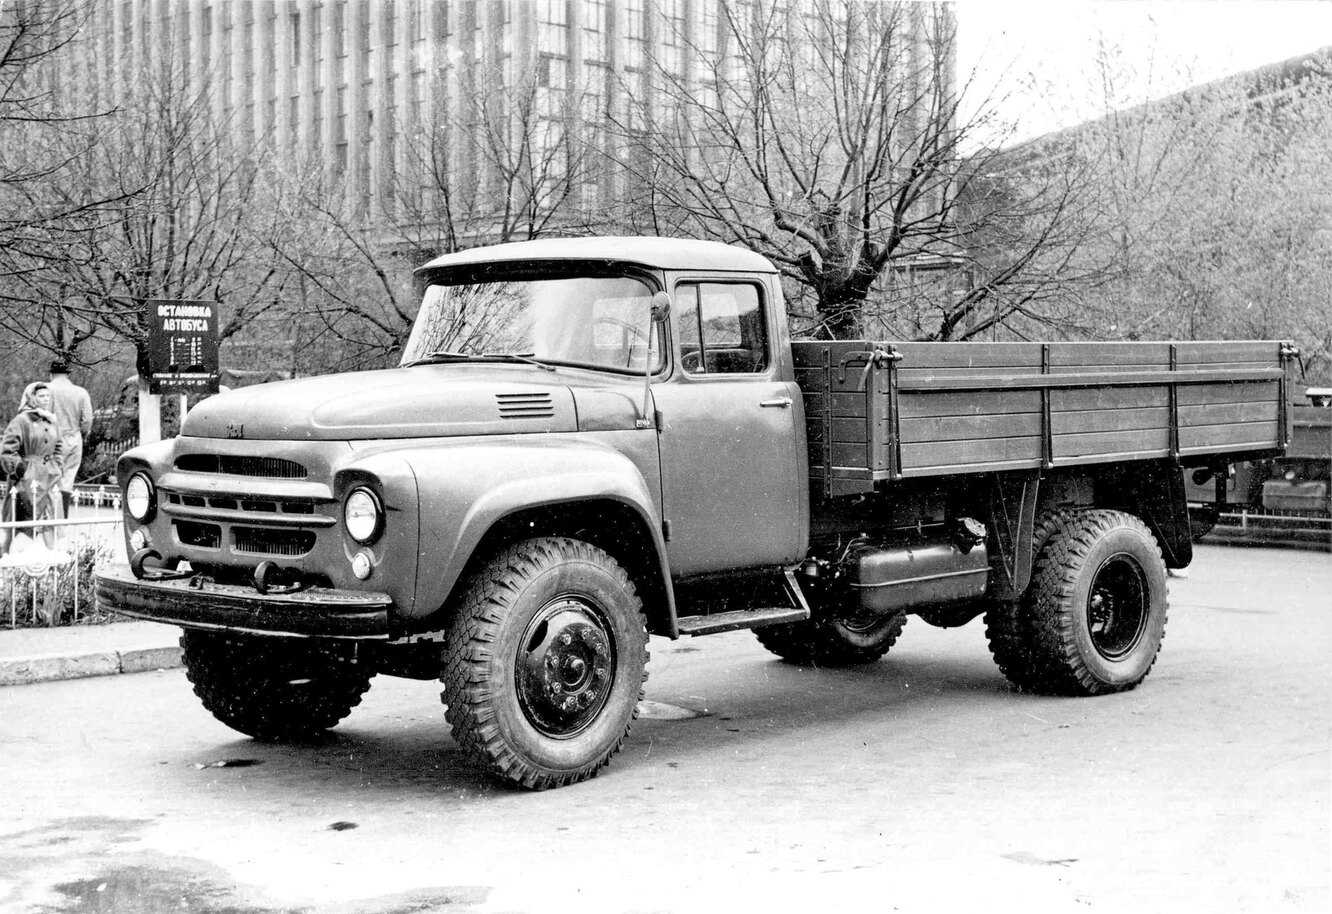 Знаменитый советский автозавод ЗИЛ выпускал не только грузовики, но и другую нужную стране технику Так, в средине 60-х годов прошлого века был представлен необычный вездеход ПКЦ 1